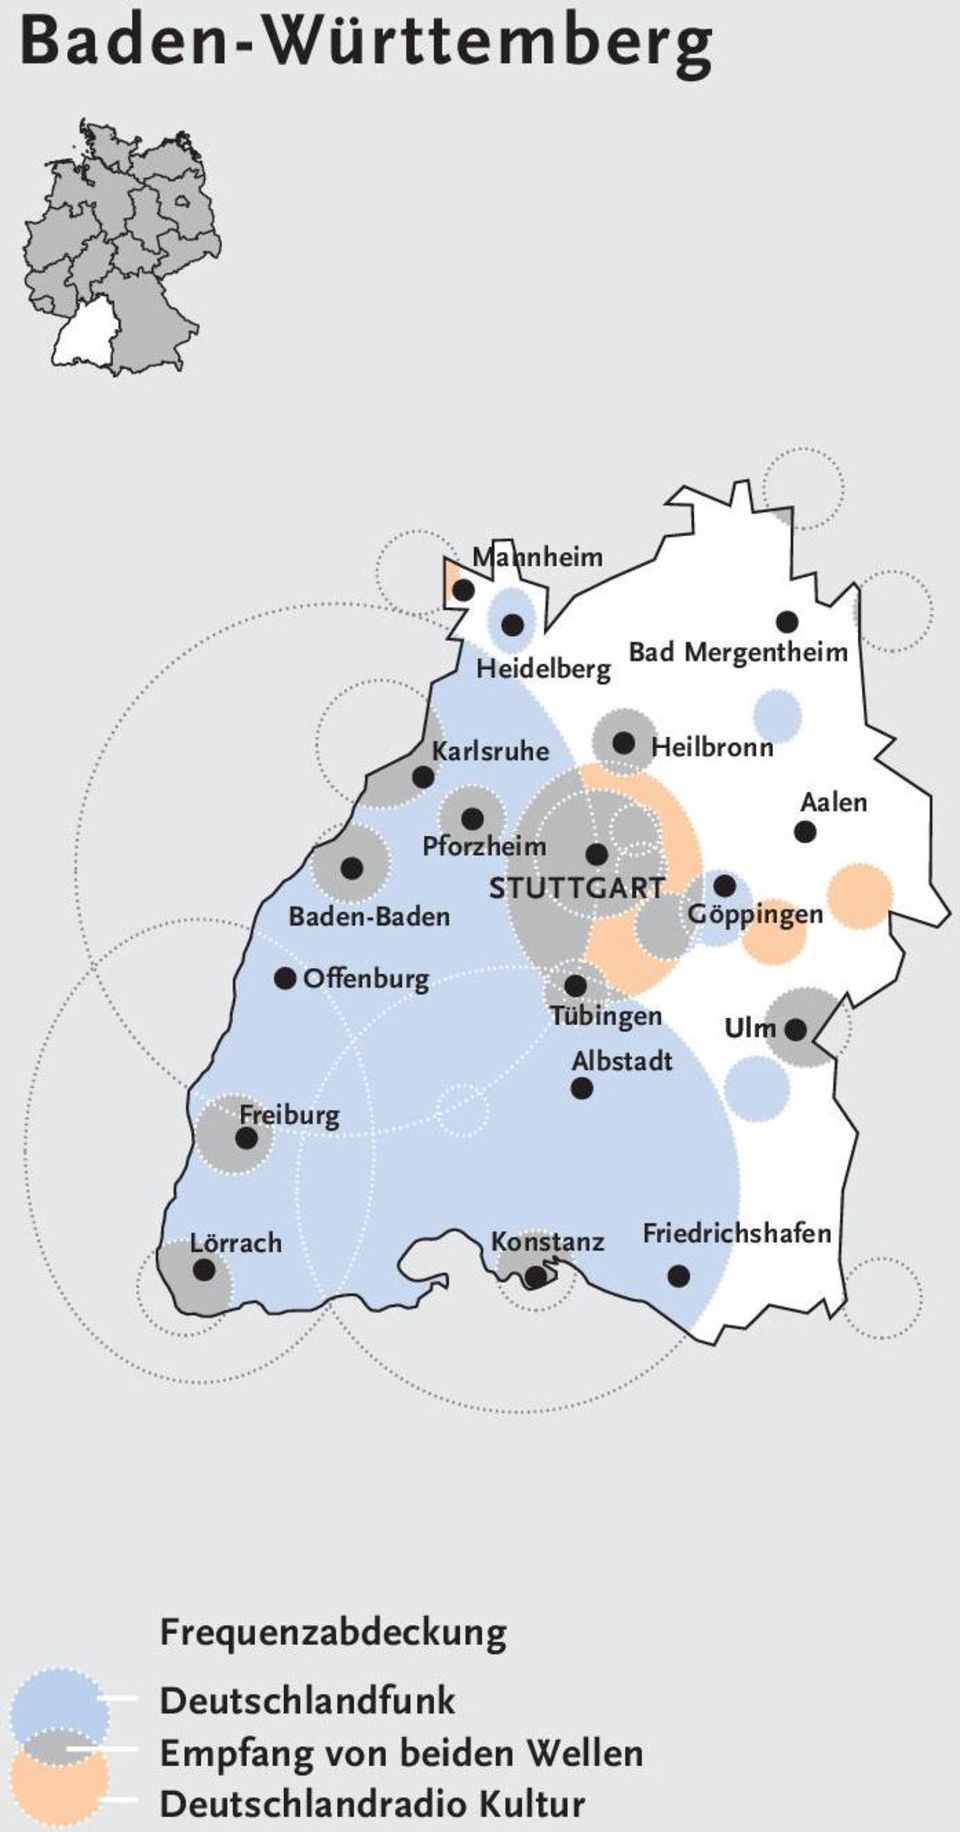 STUTTGART Baden-Baden Göppingen Freiburg Offenburg Tübingen Albstadt Ulm L Lörrach